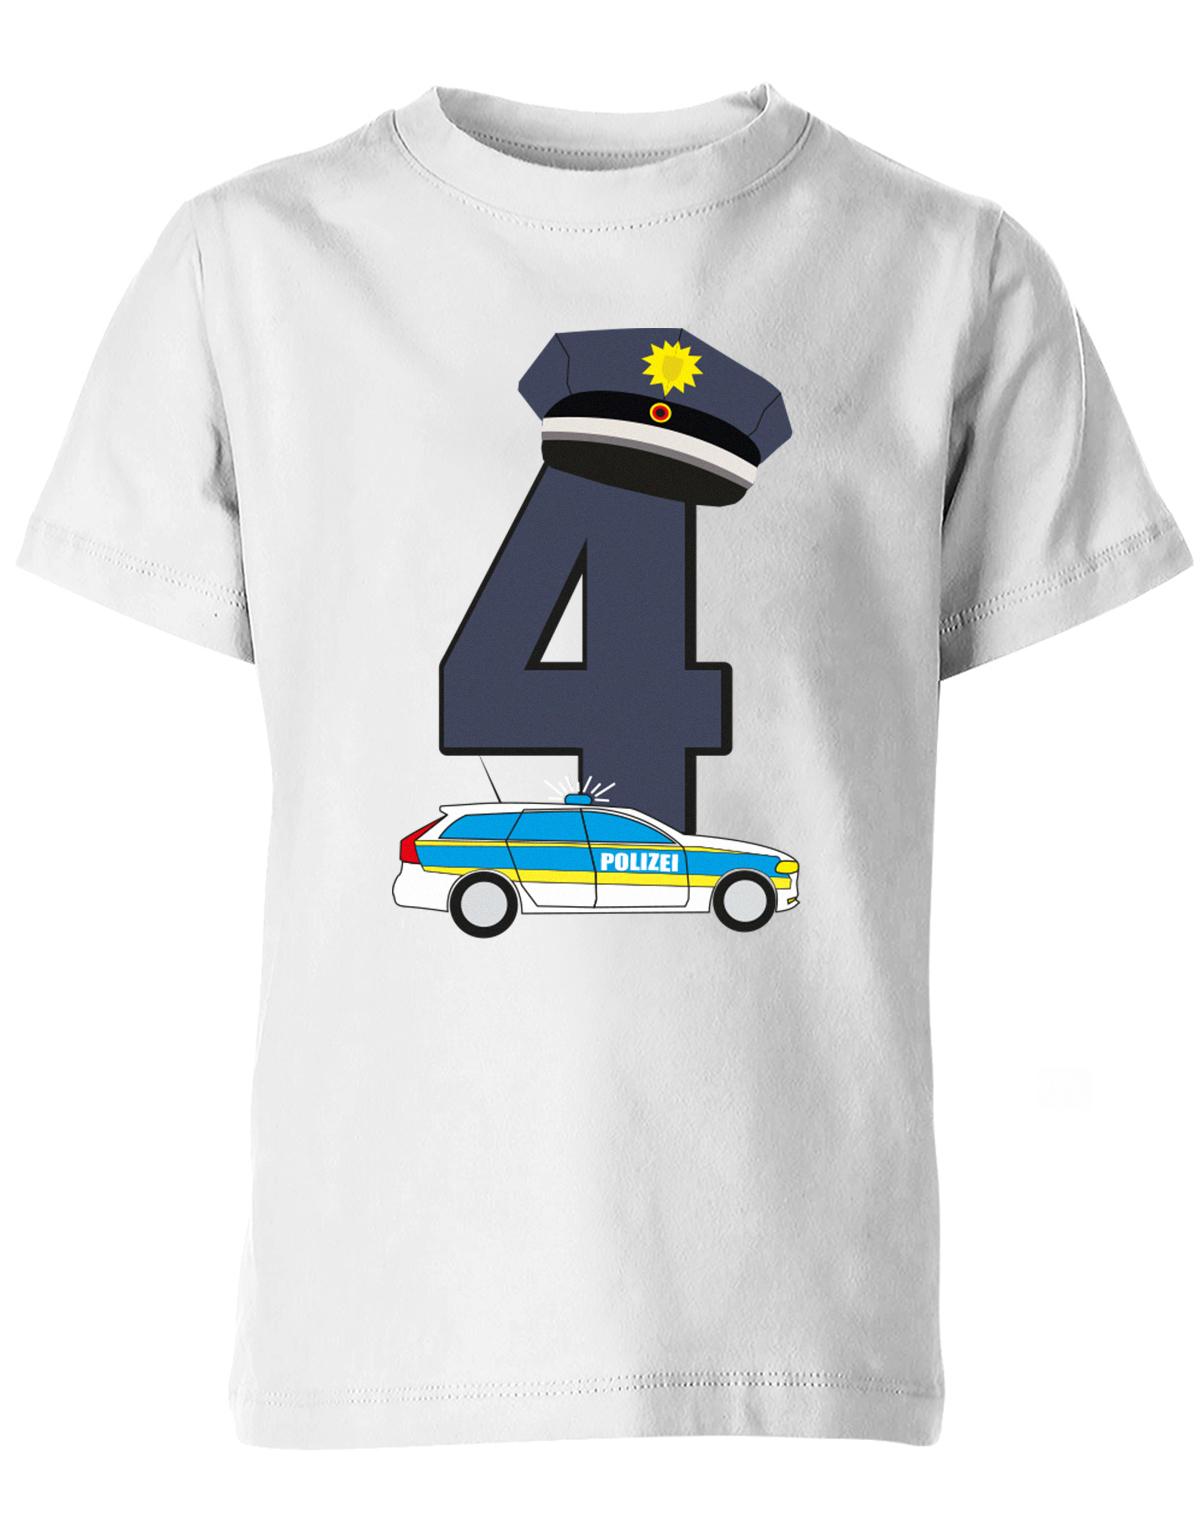 ich-bin-4-polizei-geburtstag-kinder-shirt-weiss